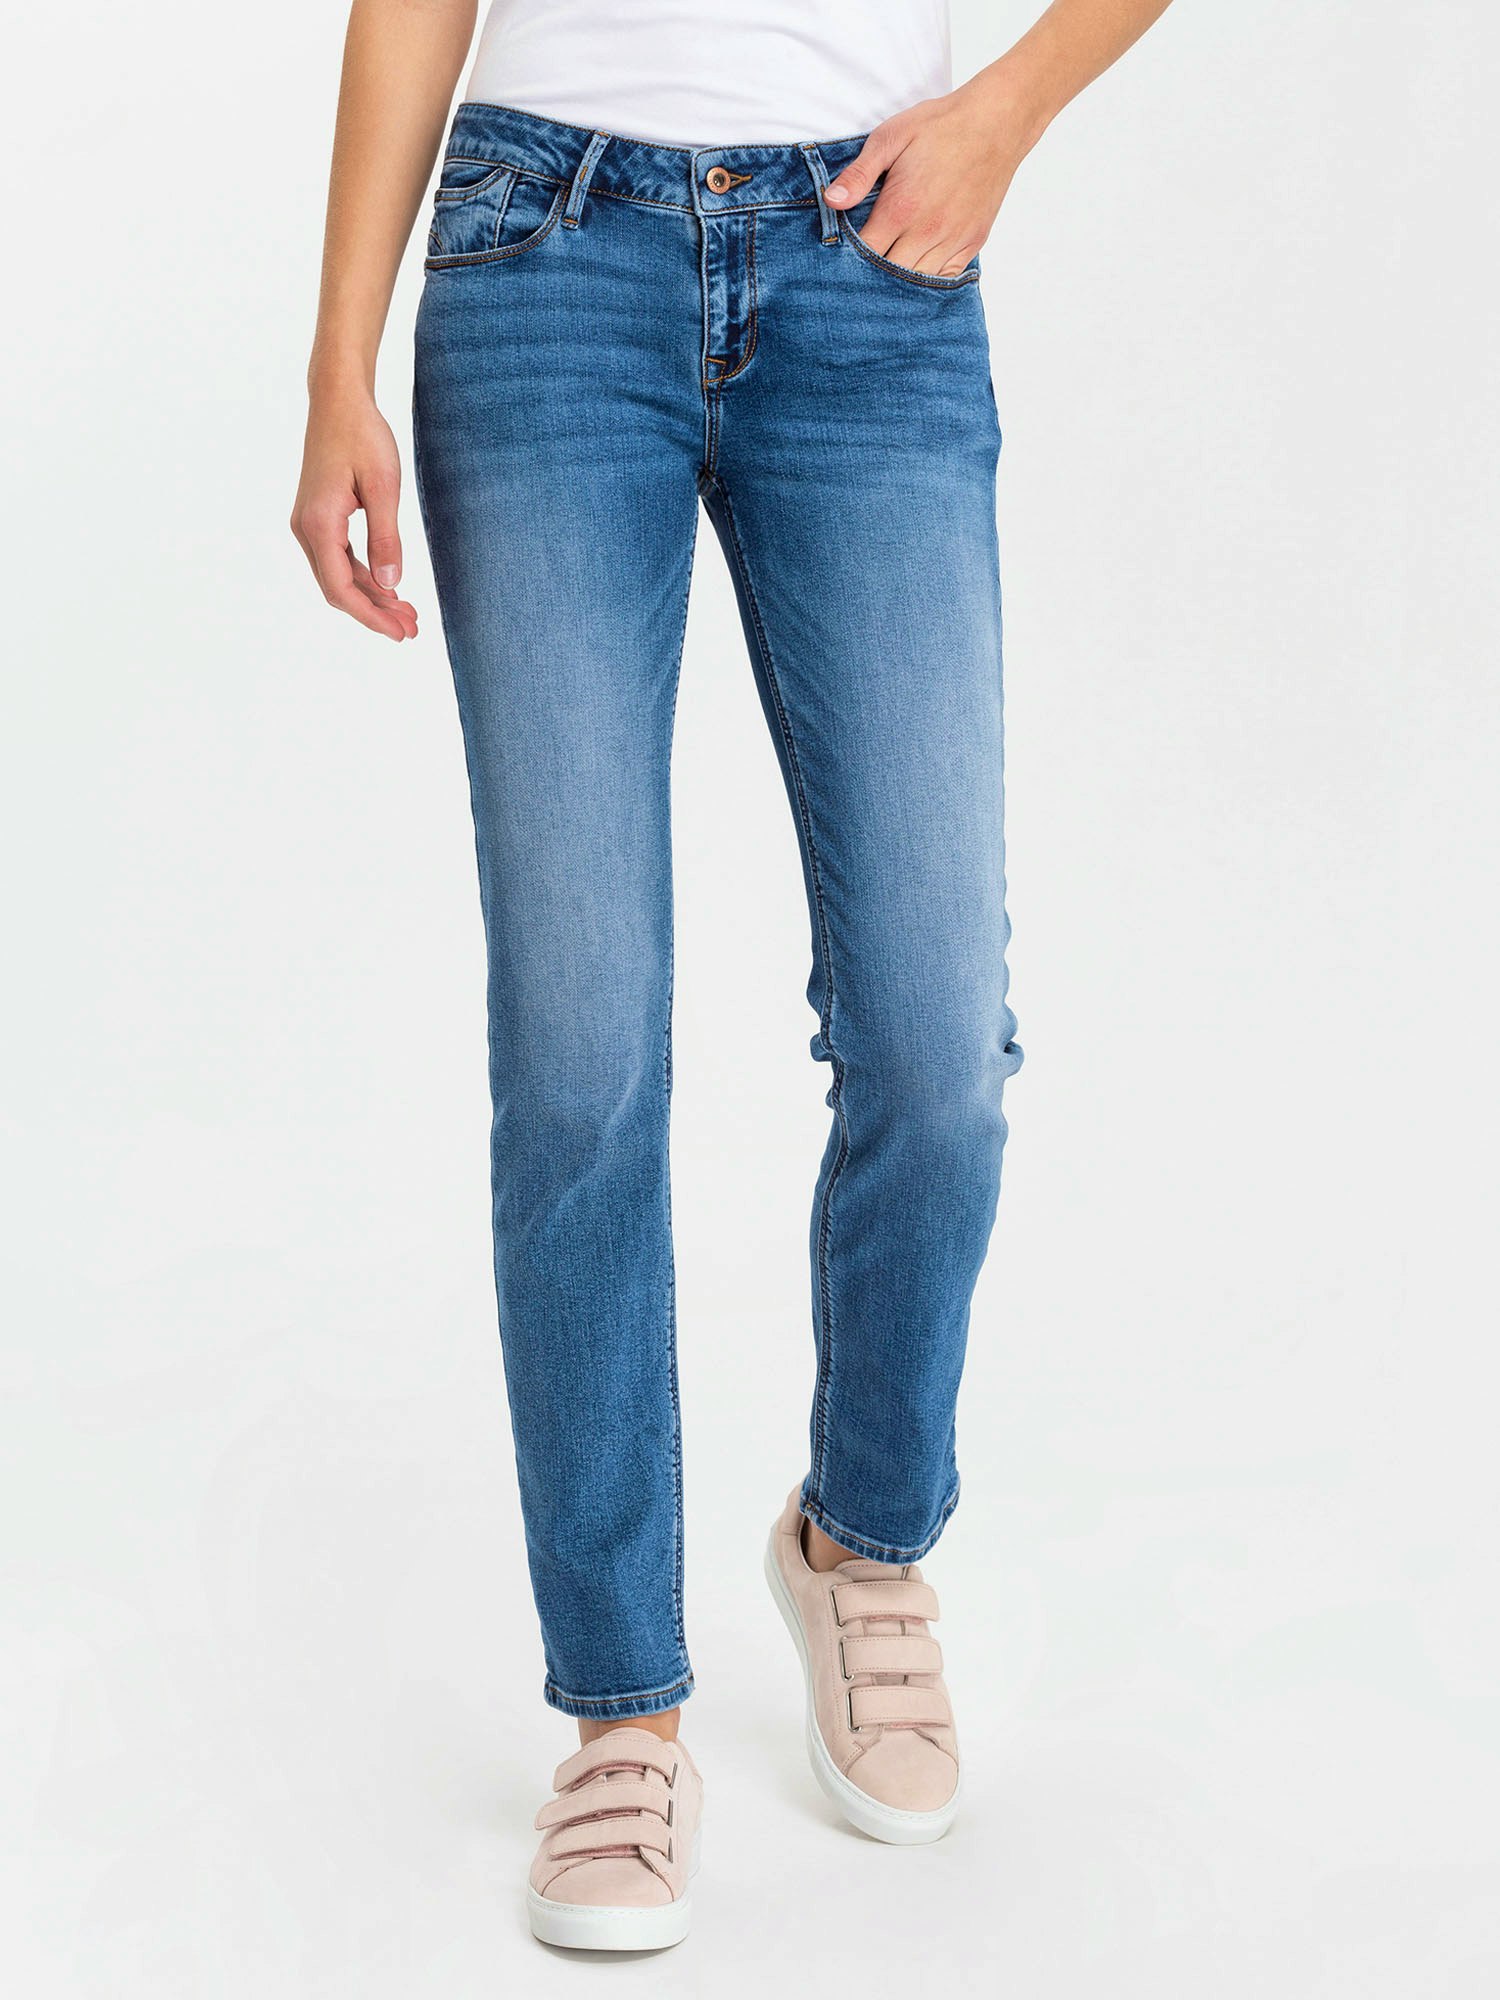 Damen jeans hoher bund - Die TOP Favoriten unter allen analysierten Damen jeans hoher bund!